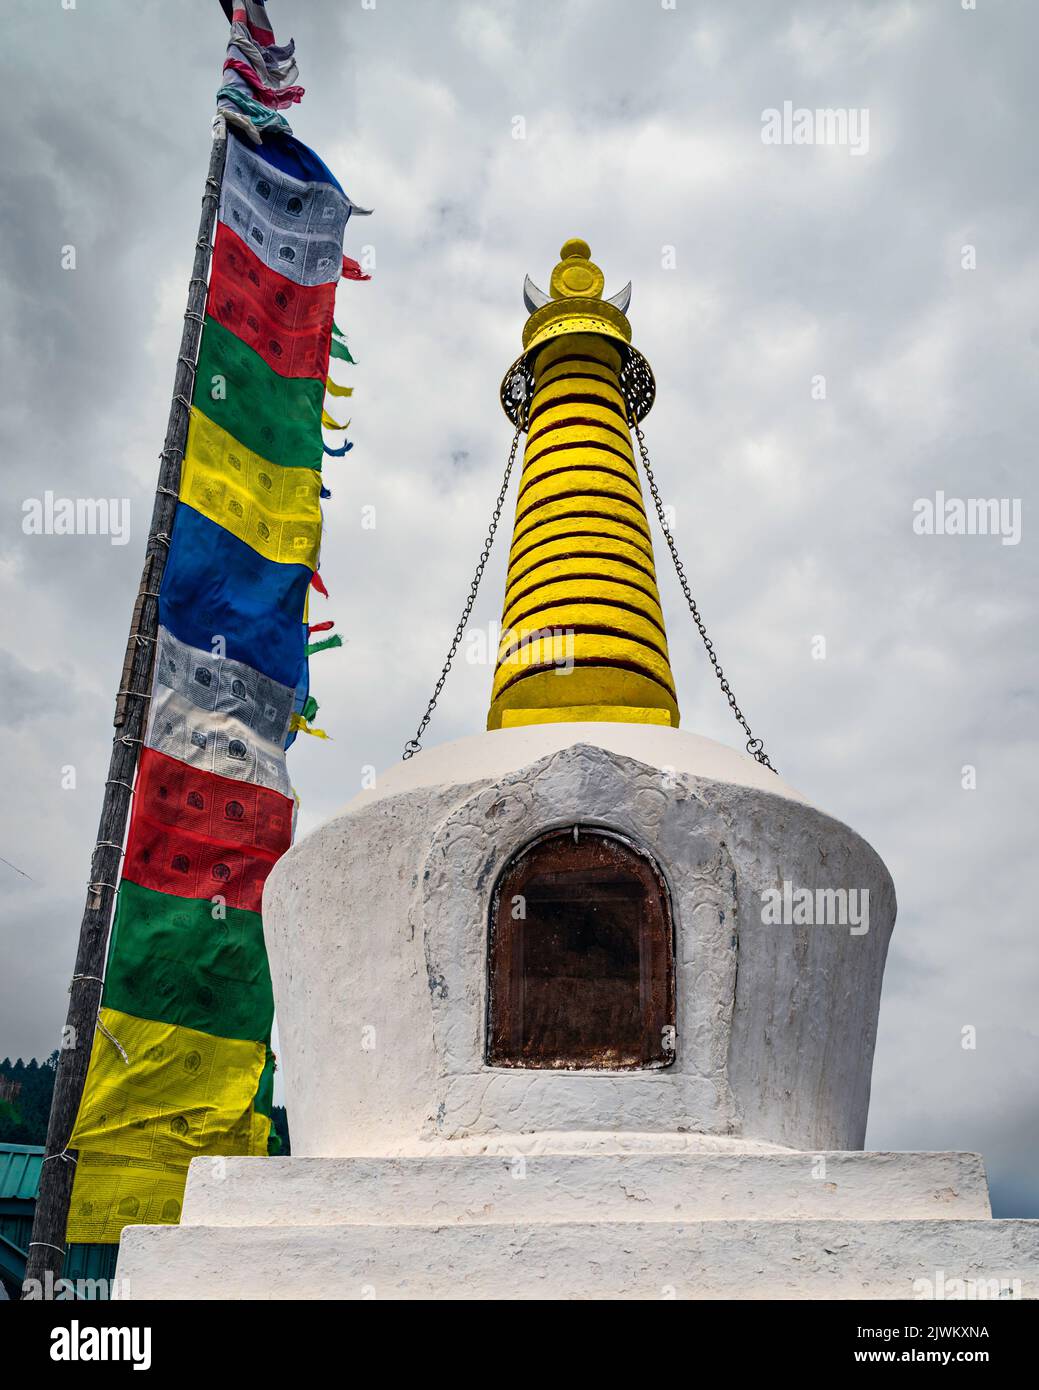 Estupa Buddist colorida flanqueada por banderas de oración de varios colores adheridas a postes de madera, todo bajo cielo nublado al aire libre en Kalpa, India. Foto de stock